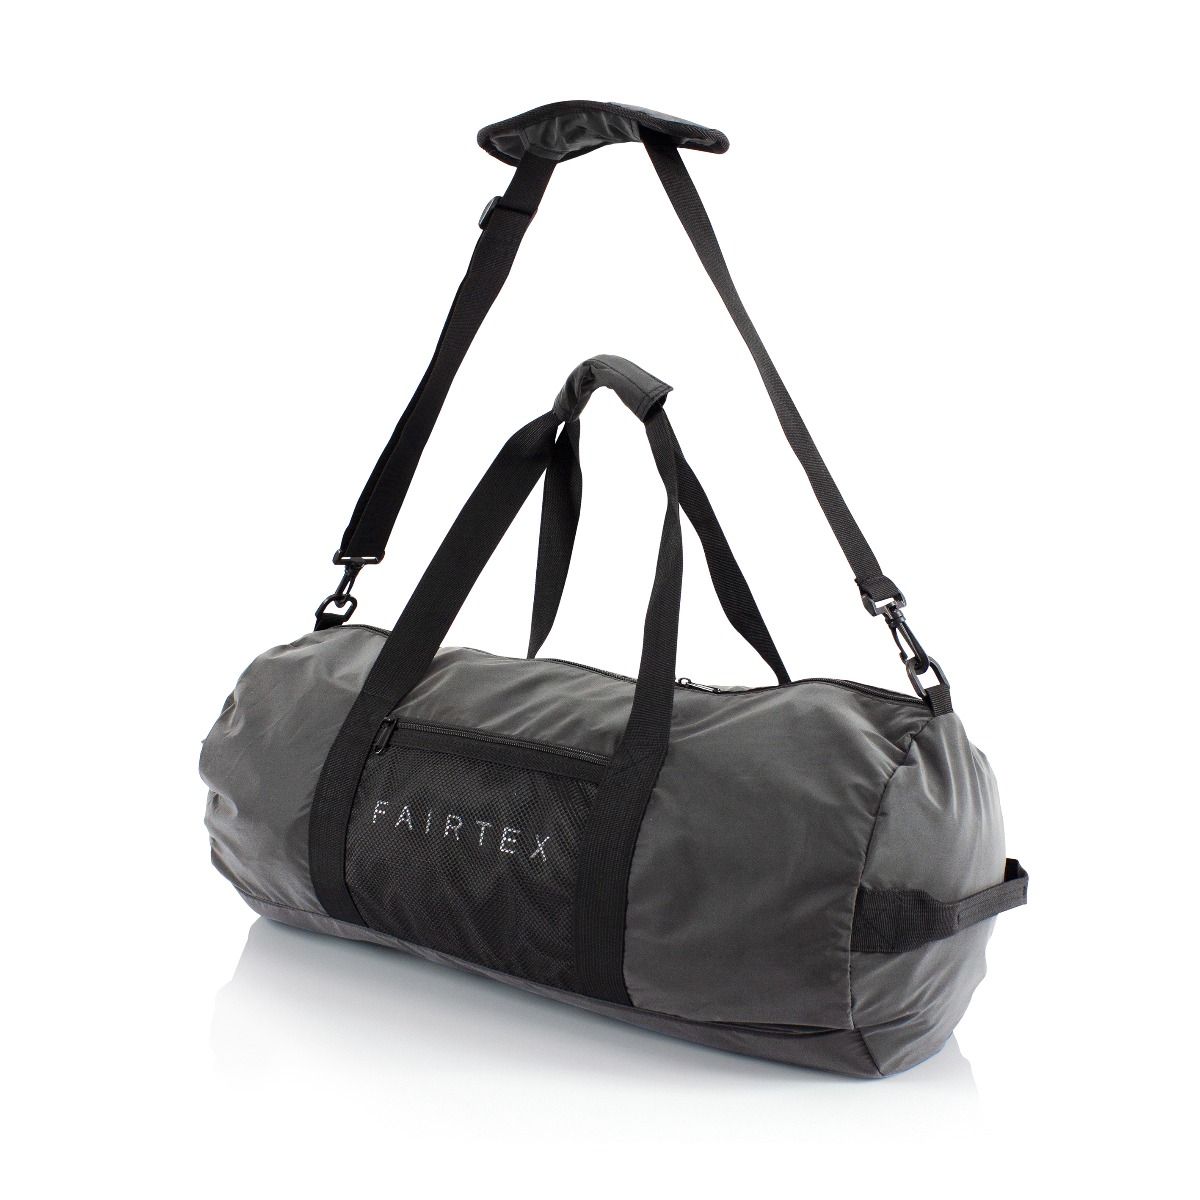 Fairtex HB16 Hydro Heavy Bag